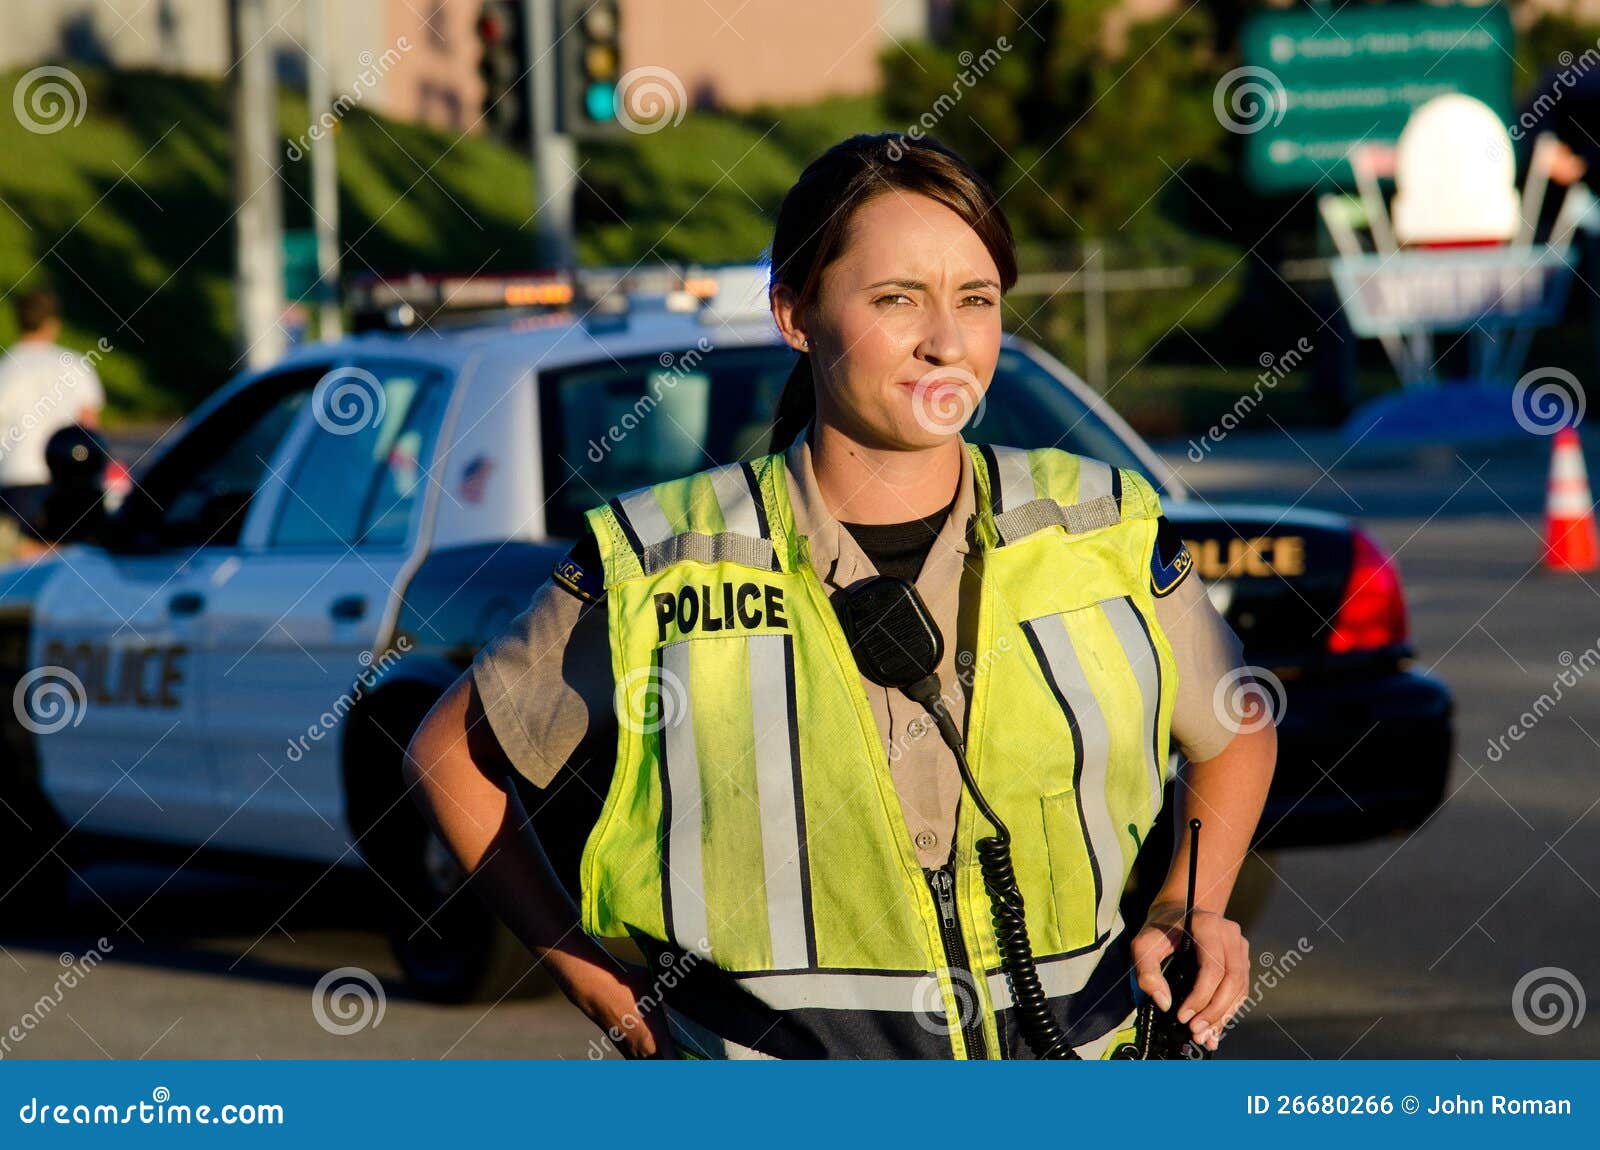 female police officer